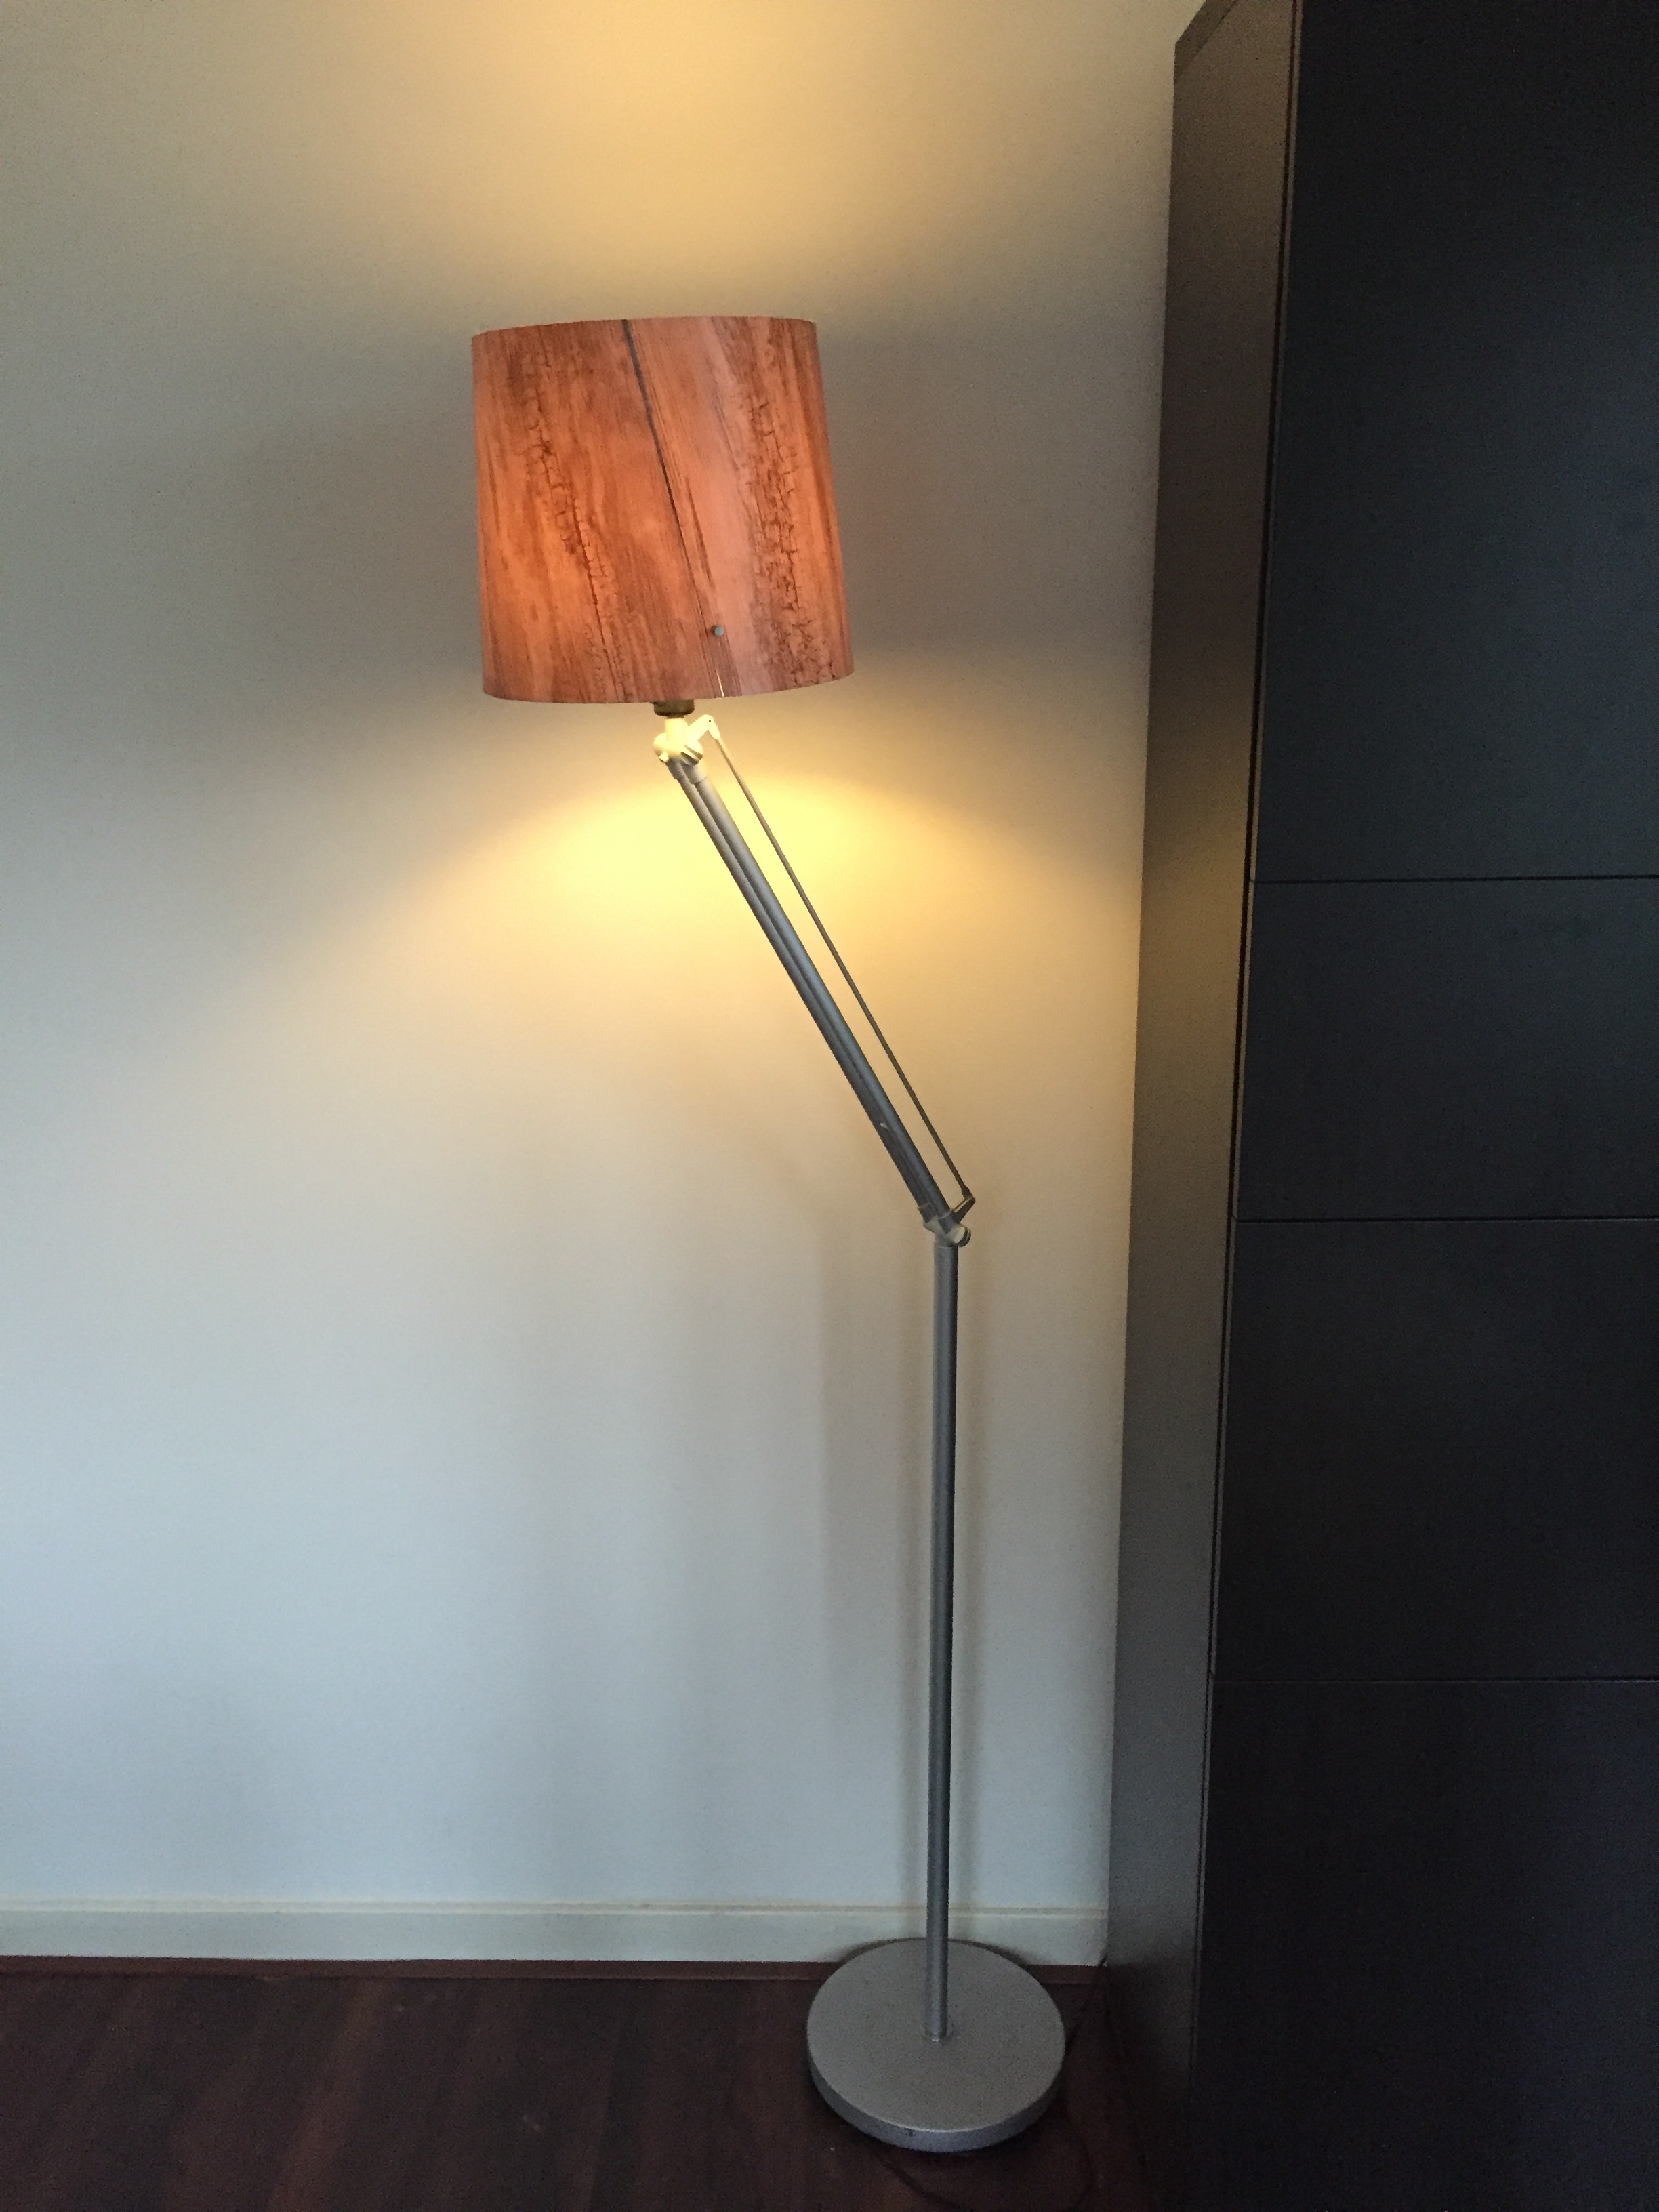 انها عديمة الجدوى كمان البصيرة  IKEA Lamp “Samtid” Make-Over – J E M S